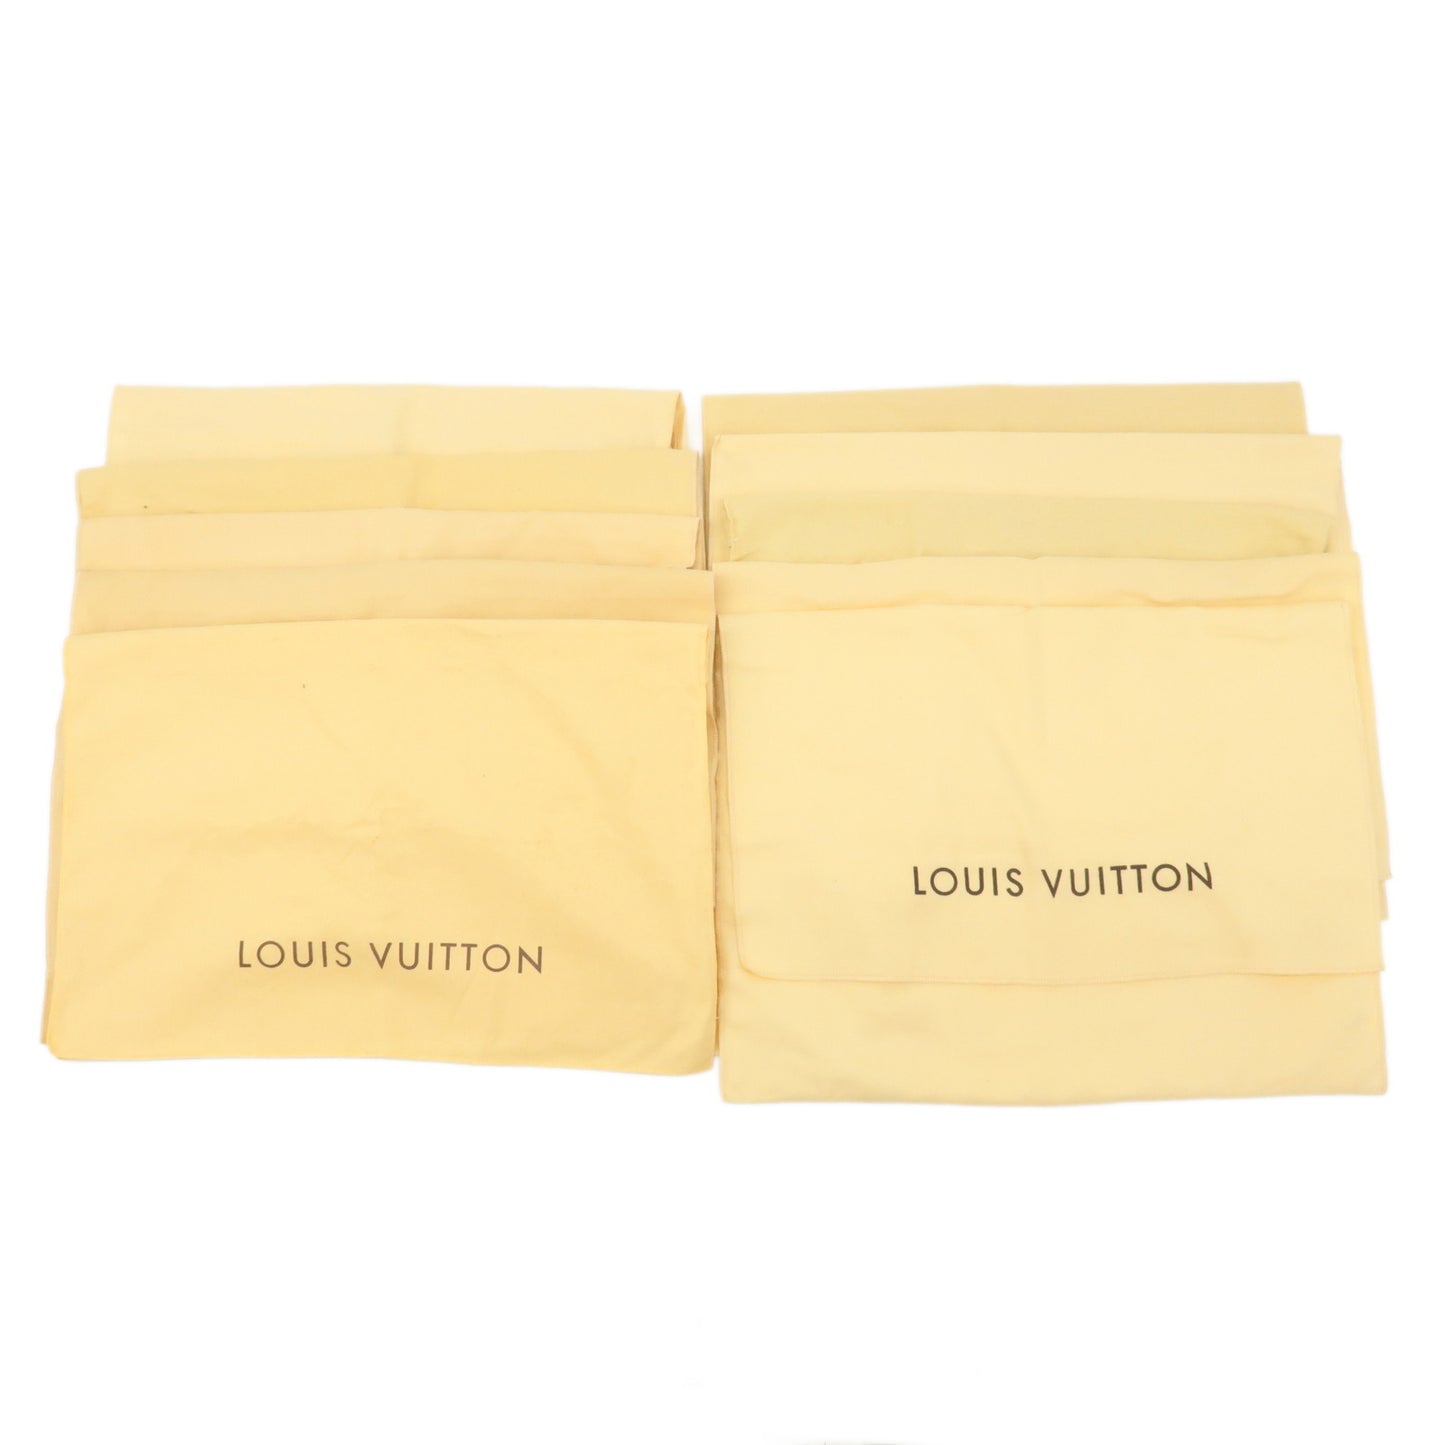 Louis-Vuitton-Set-of-10-Dust-Bag-Storage-Bag-Flap-Beige